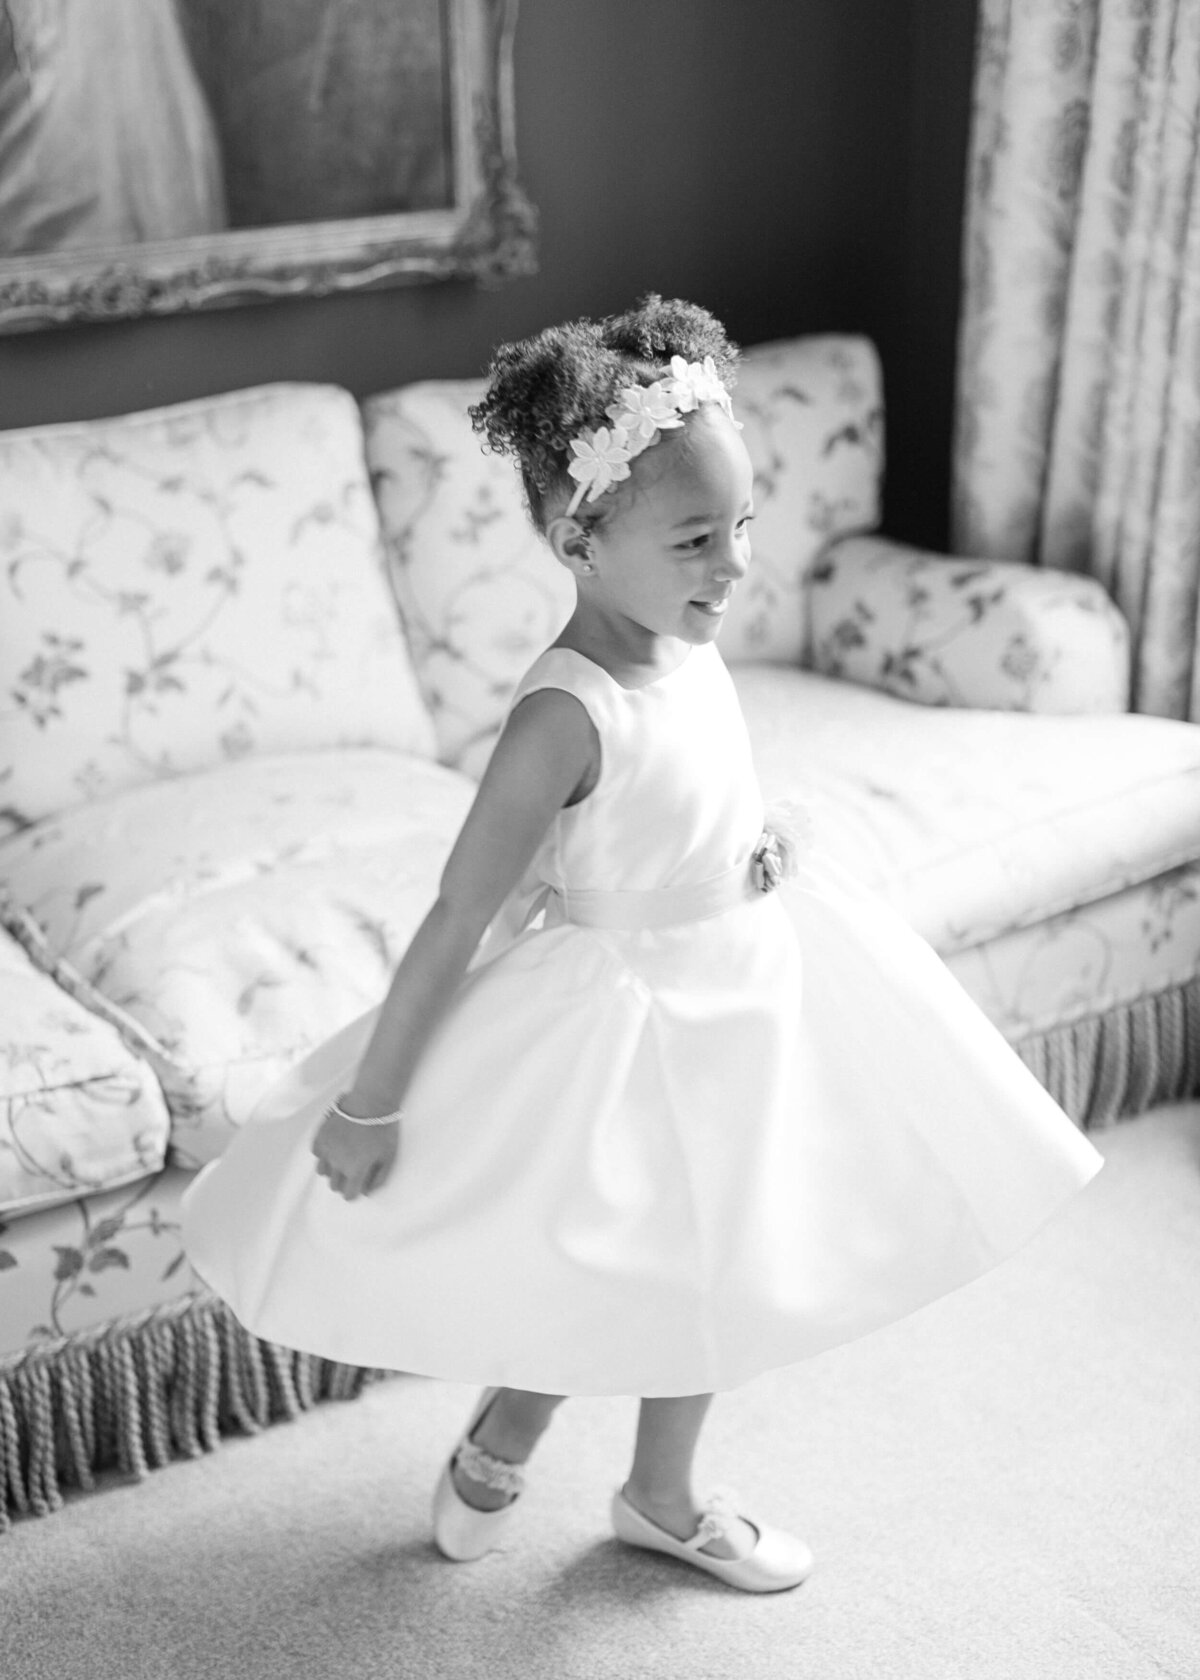 chloe-winstanley-weddings-flower-girl-dress-black-white